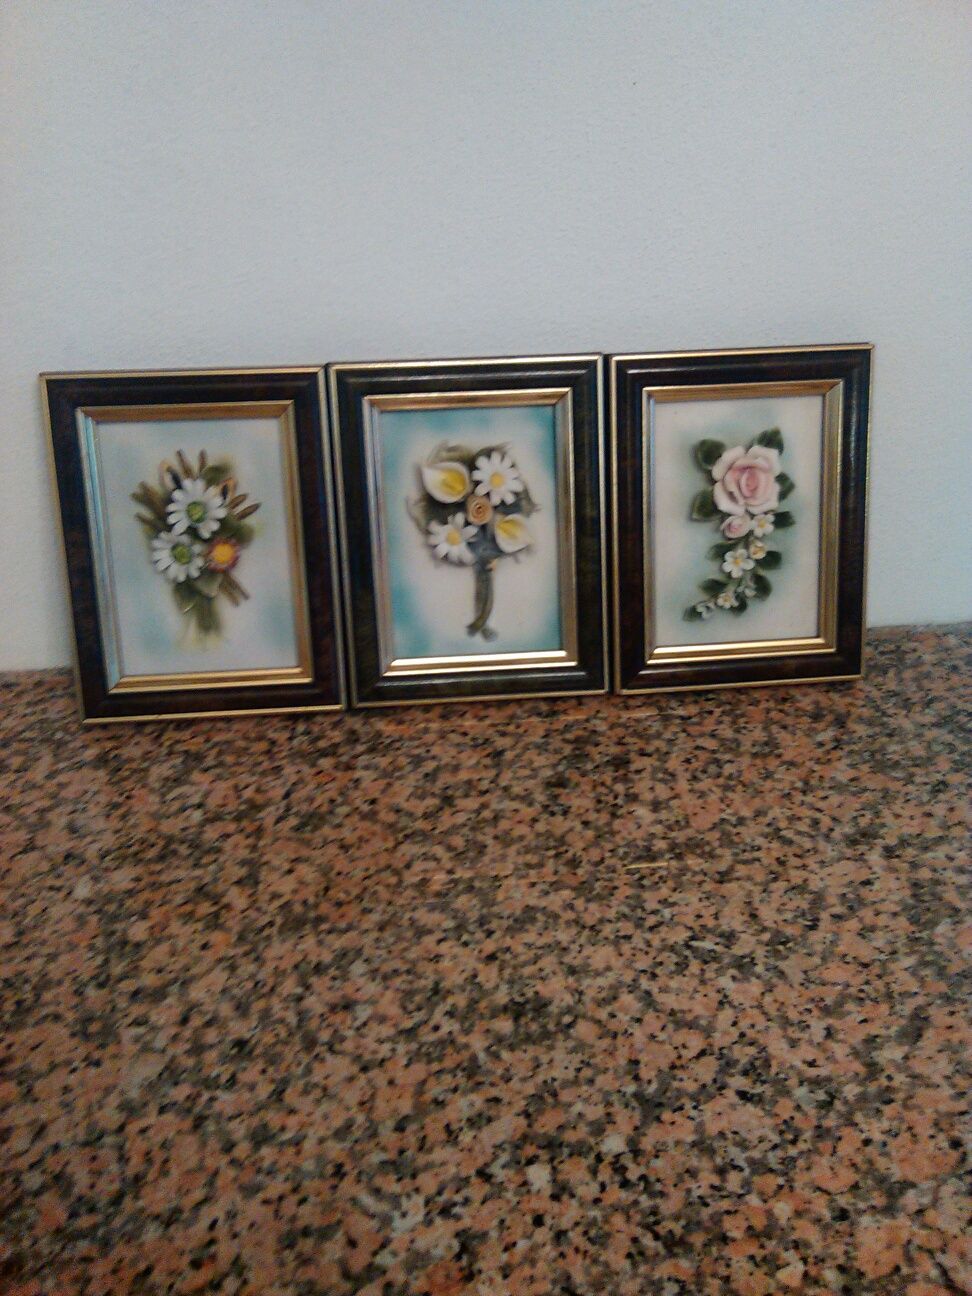 Quadros Italianos com flores em porcelana